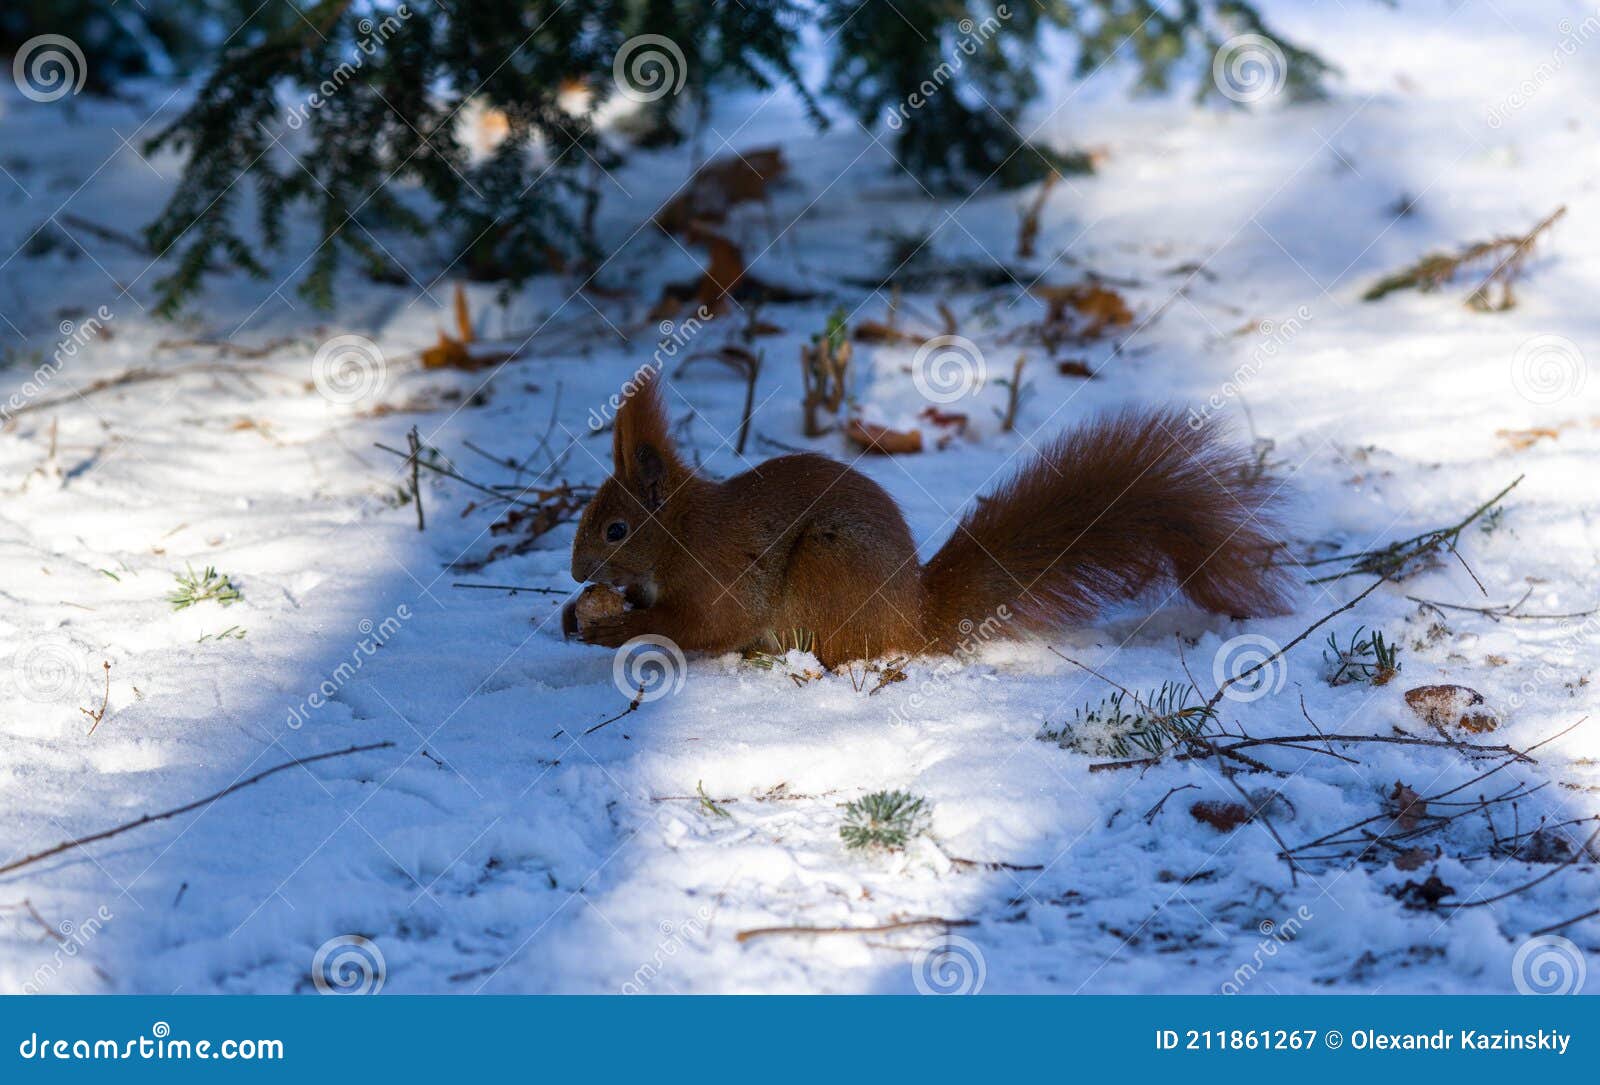 冬季雪中可爱的小松鼠动物图片大全 - 你美图库